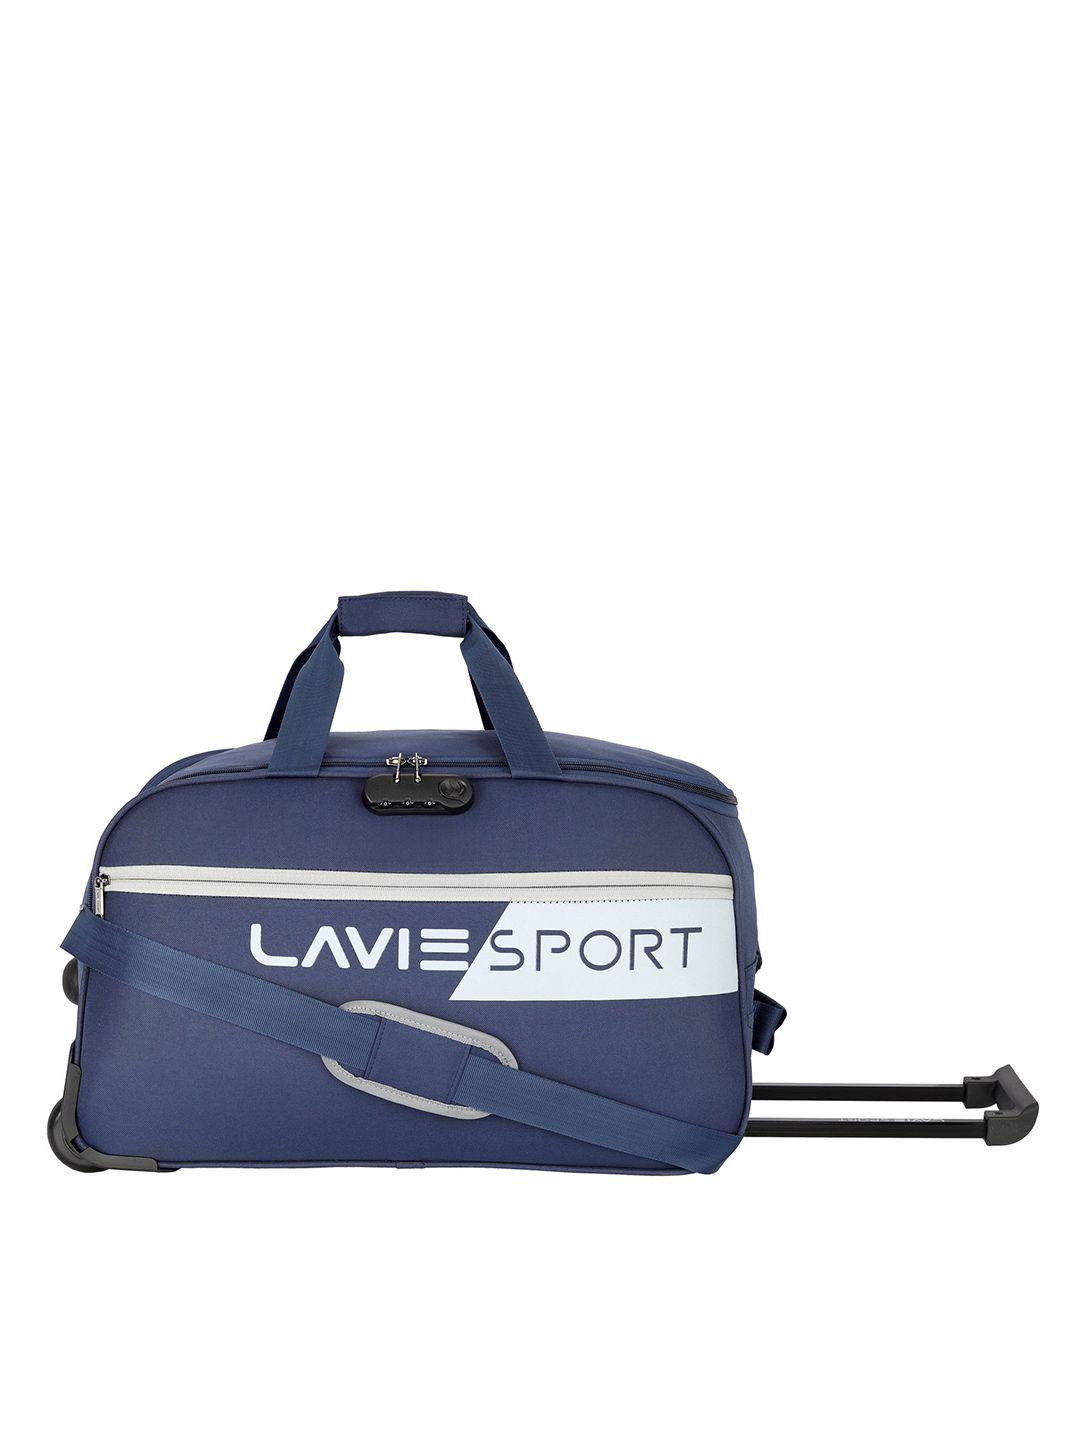 lavie-sport-navy-blue-printed-duffel-bag